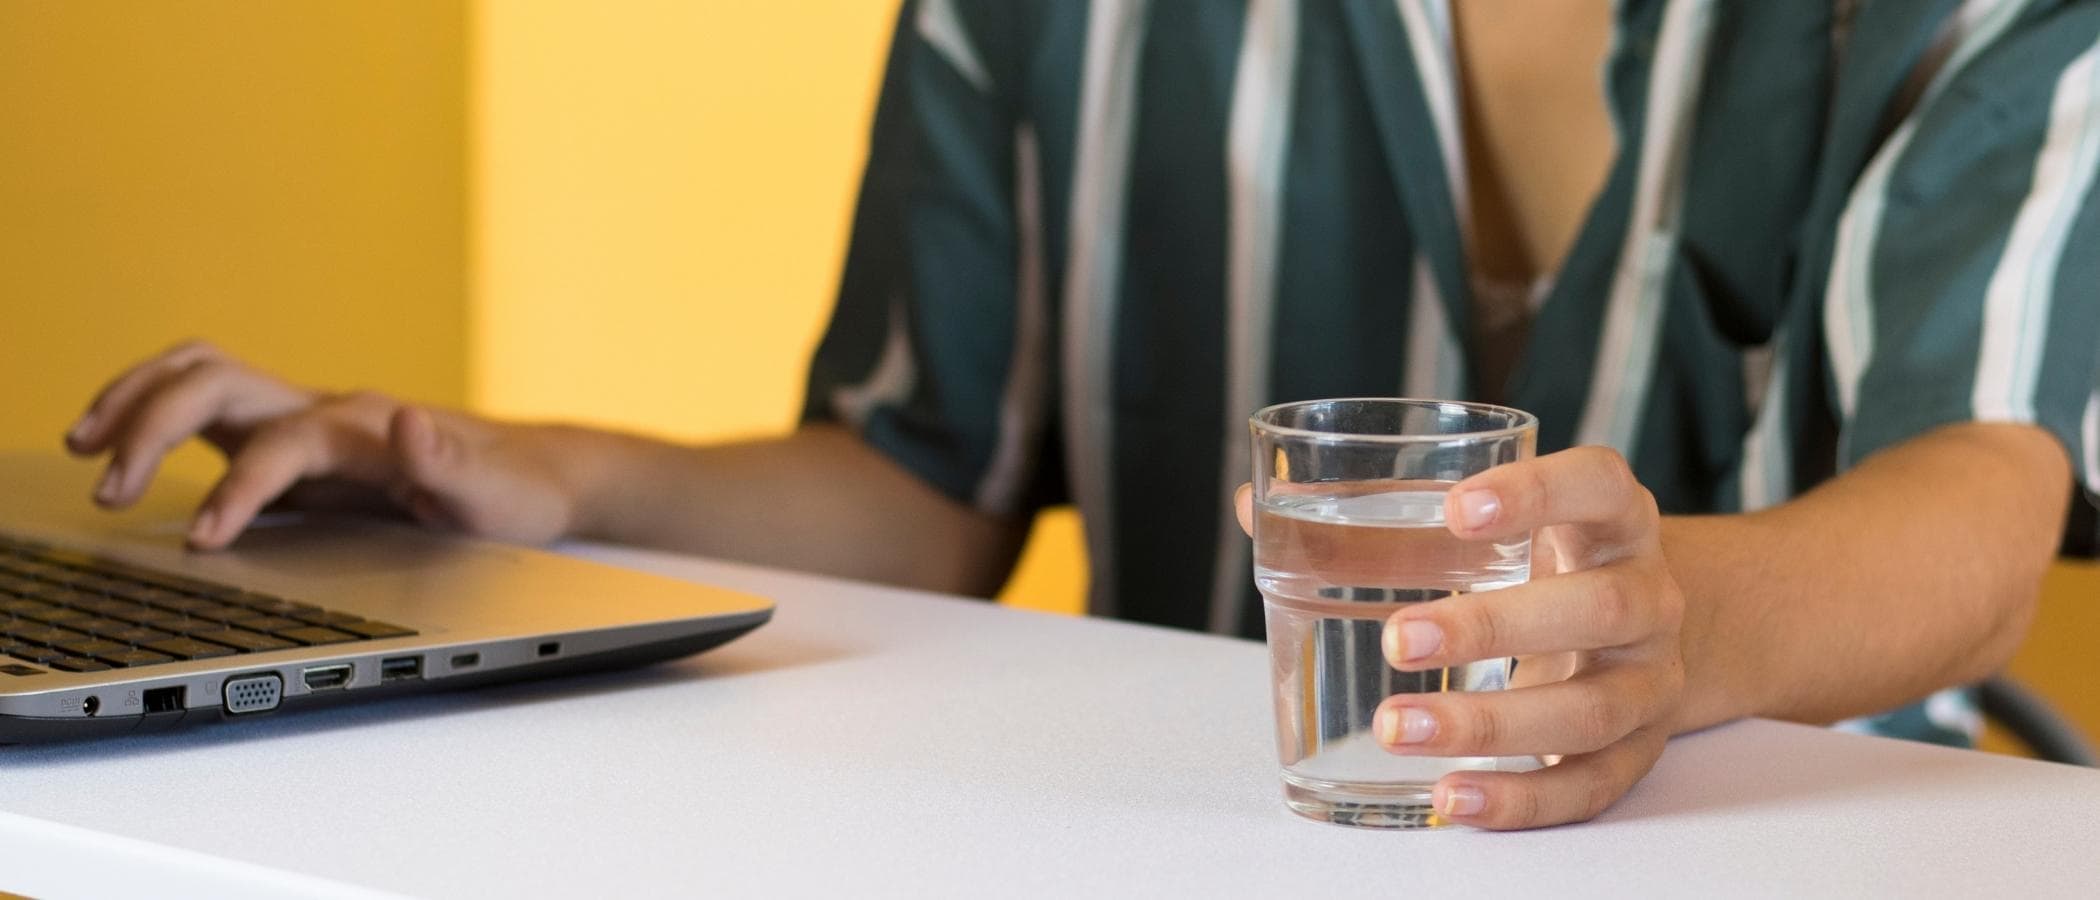 Glass of water on desk near laptop